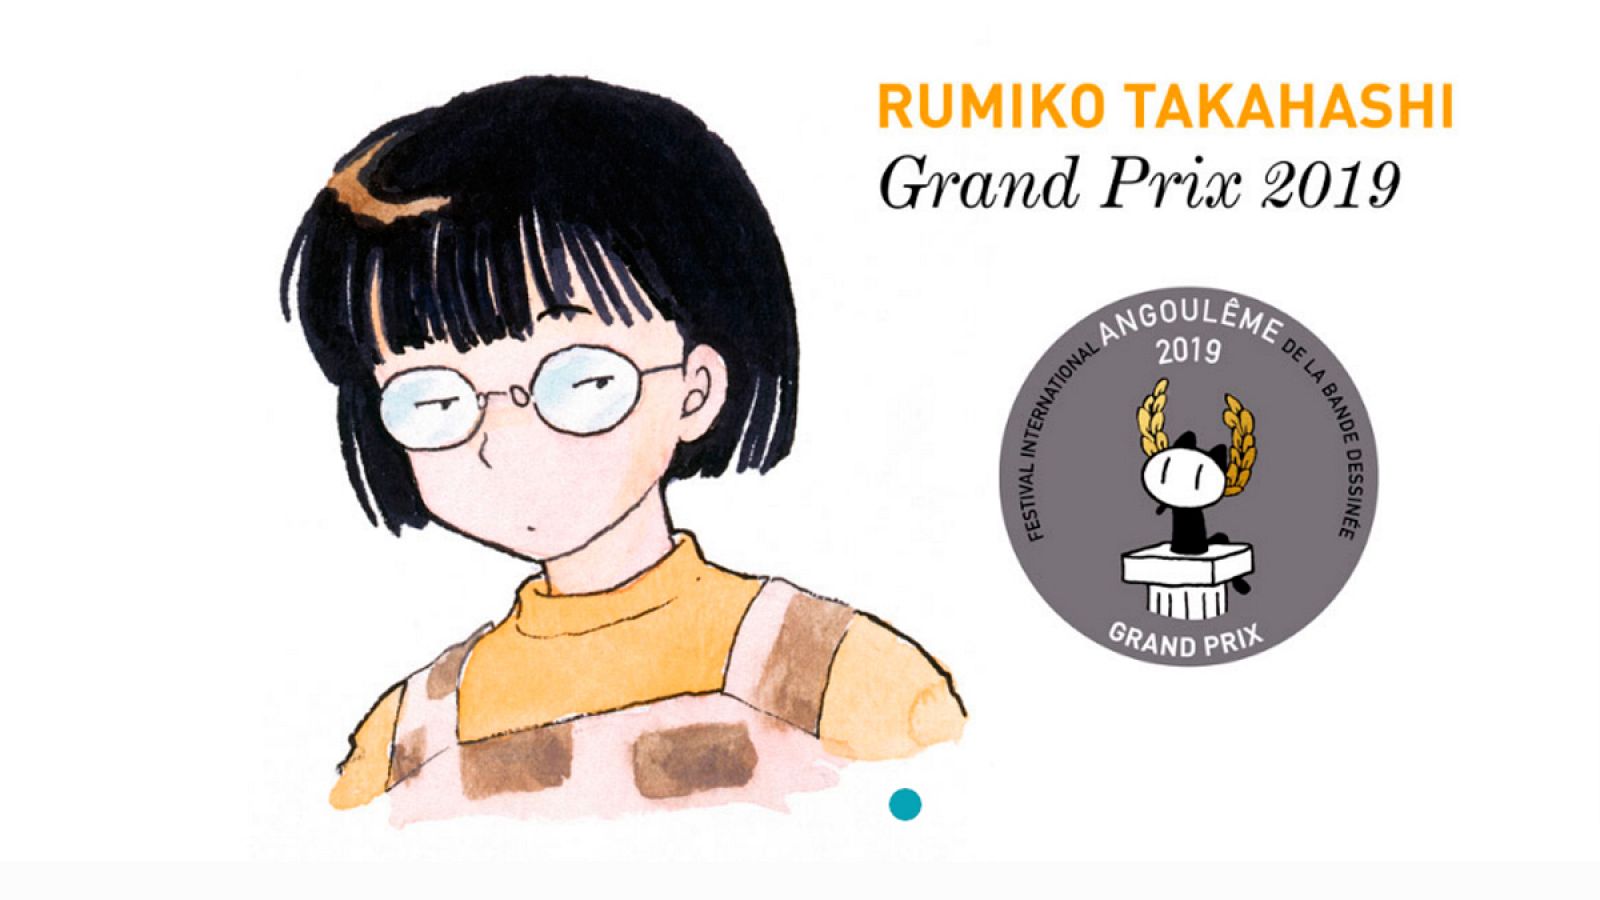 Anuncio del premio a Rumiko Takahashi  en la web de Angulema